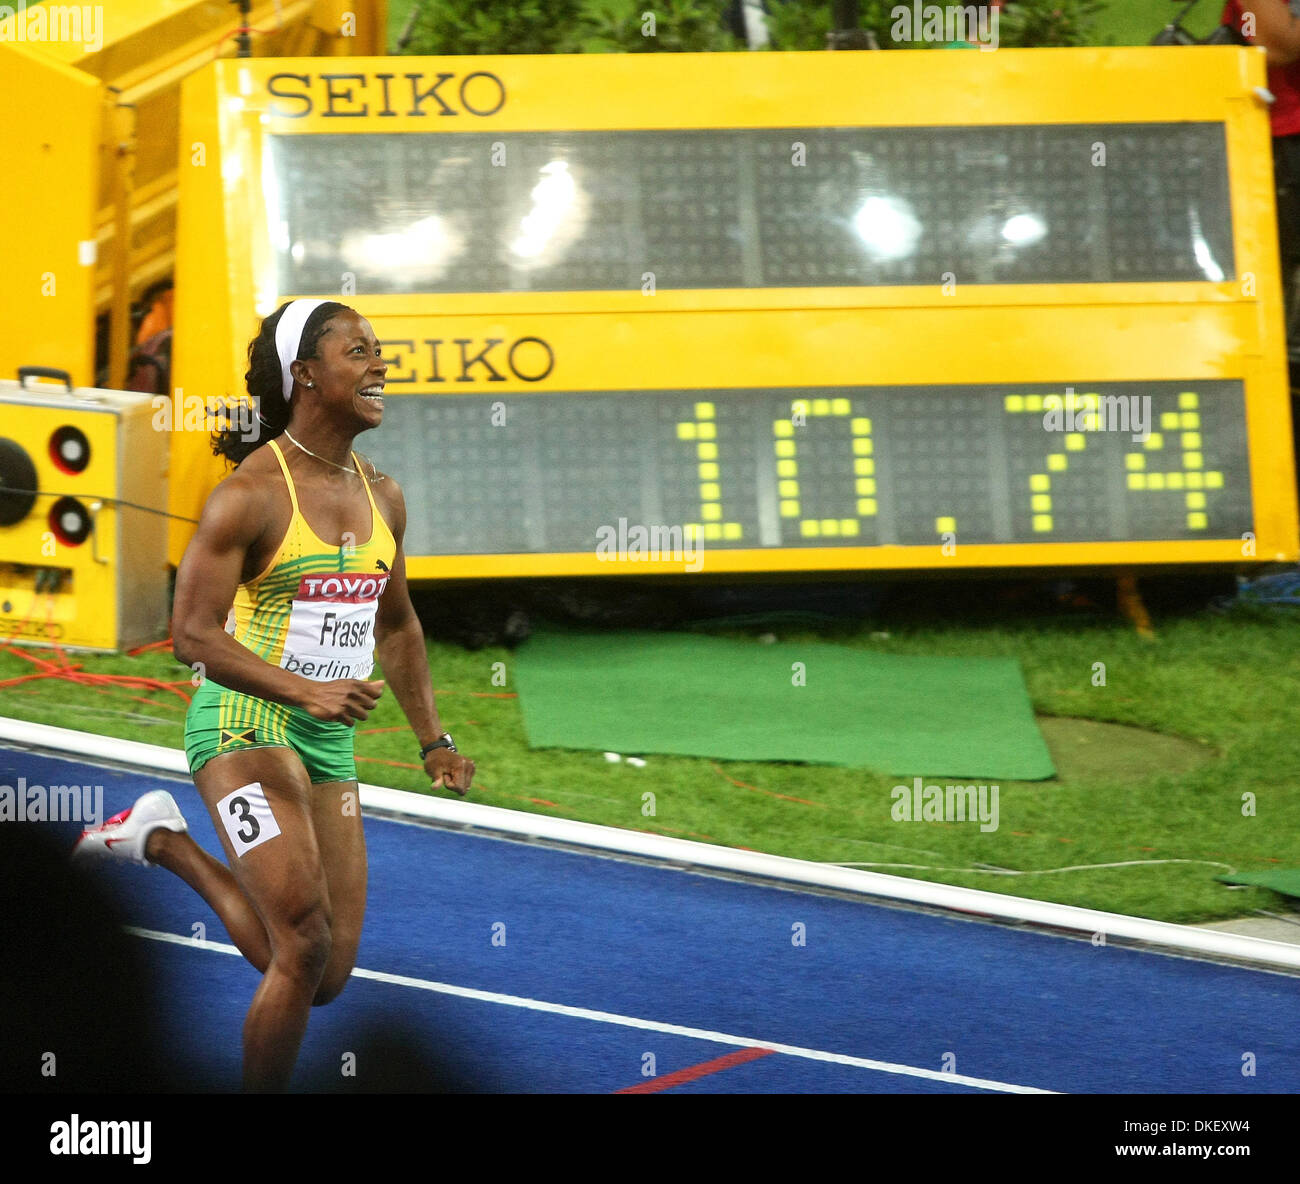 Aug 16, 2009 - Berlino, Germania - giamaicano SHELLY-ANN FRASER che ha vinto la 100m Finale donne durante il dodicesimo IAAF Campionati del Mondo di atletica leggera tenutosi a Stadio Olimpico di Berlino. (Credito Immagine: © Aleksander V. Chernykh/PhotoXpress/ZUMA Press) Foto Stock